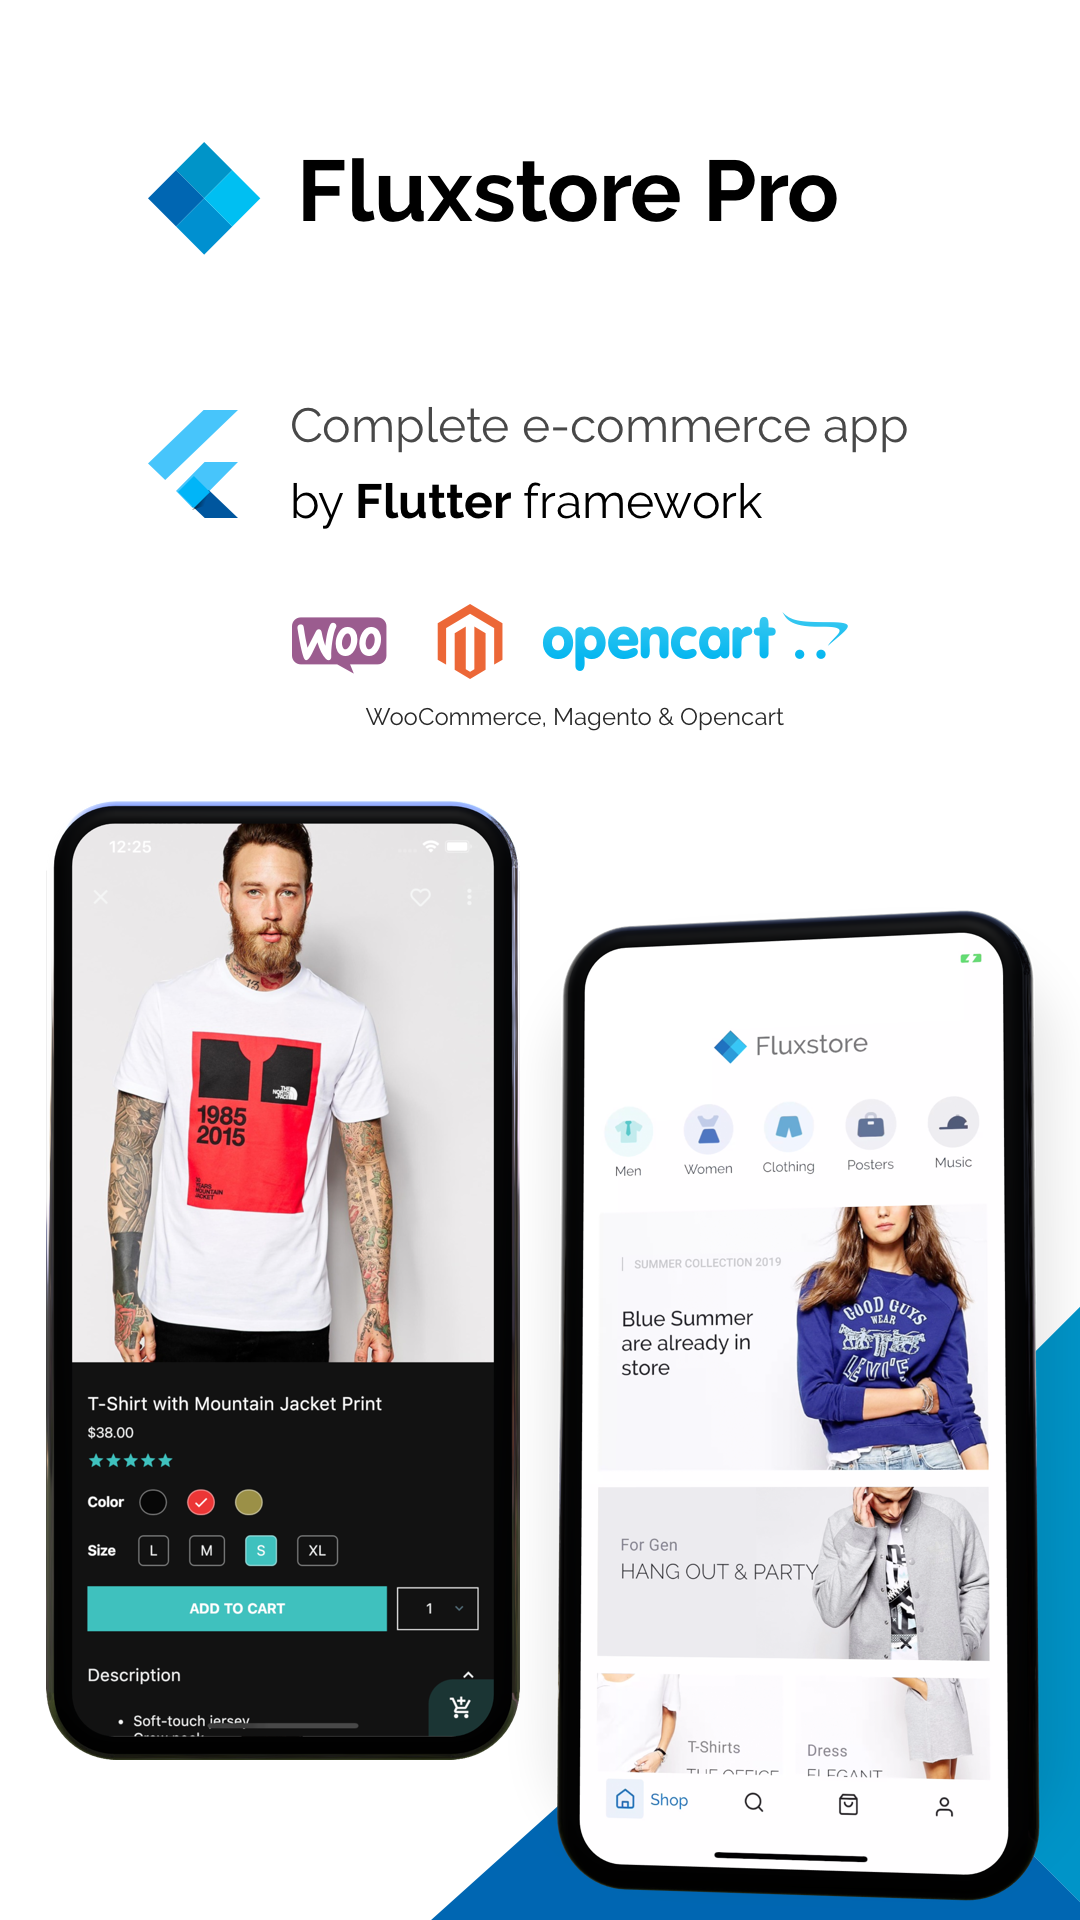 FluxStore Pro - Flutter E-commerce Full App for Magento, Opencart, and